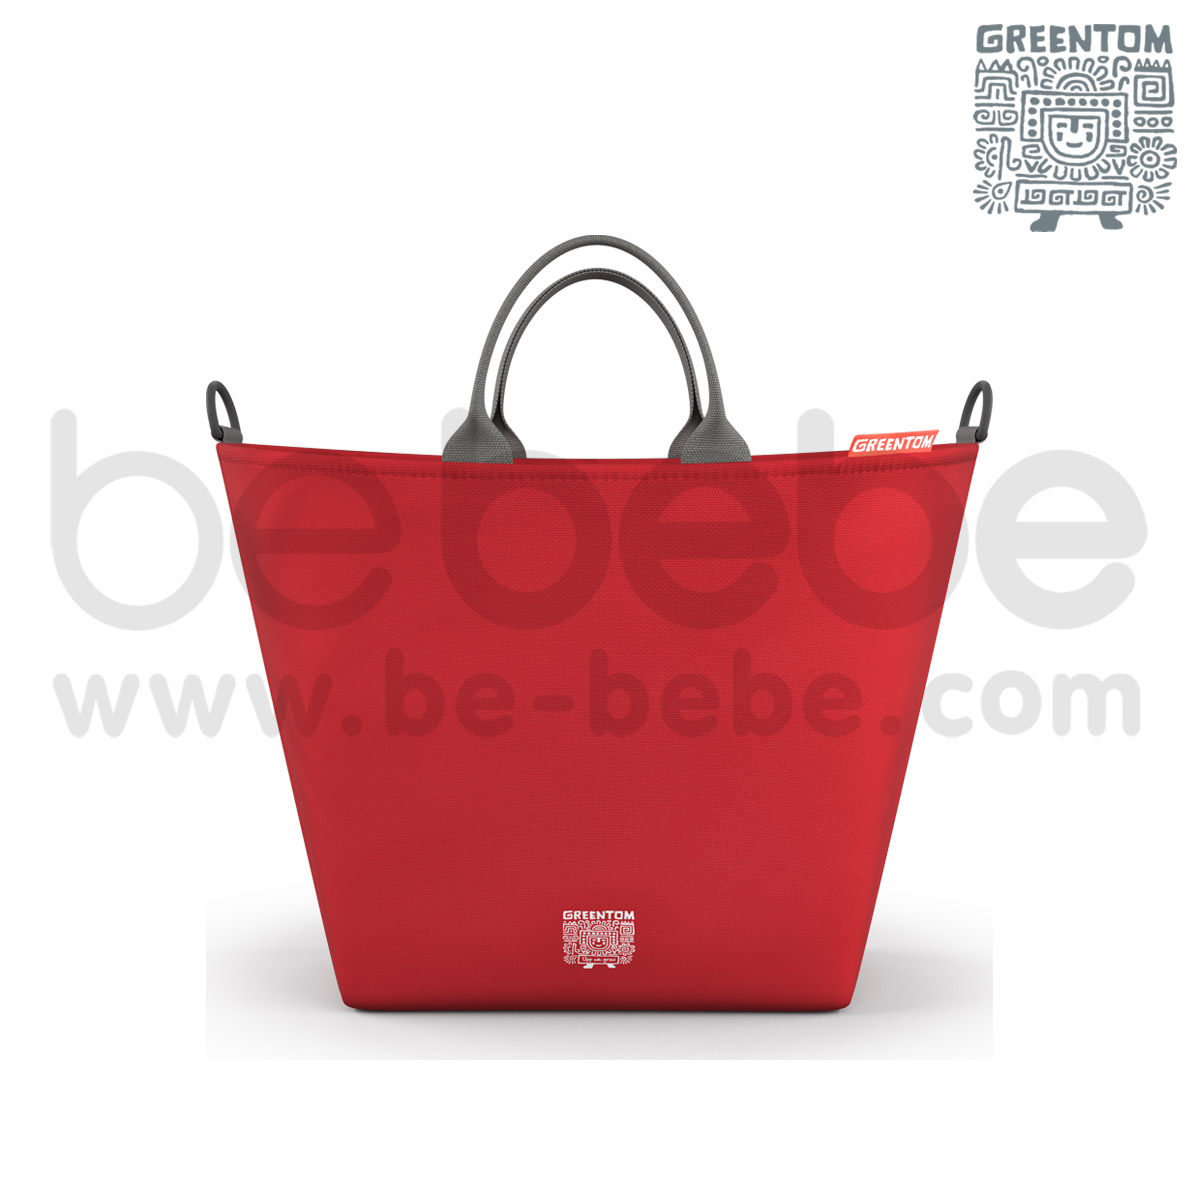 Greentom : Shopping Bag / Red